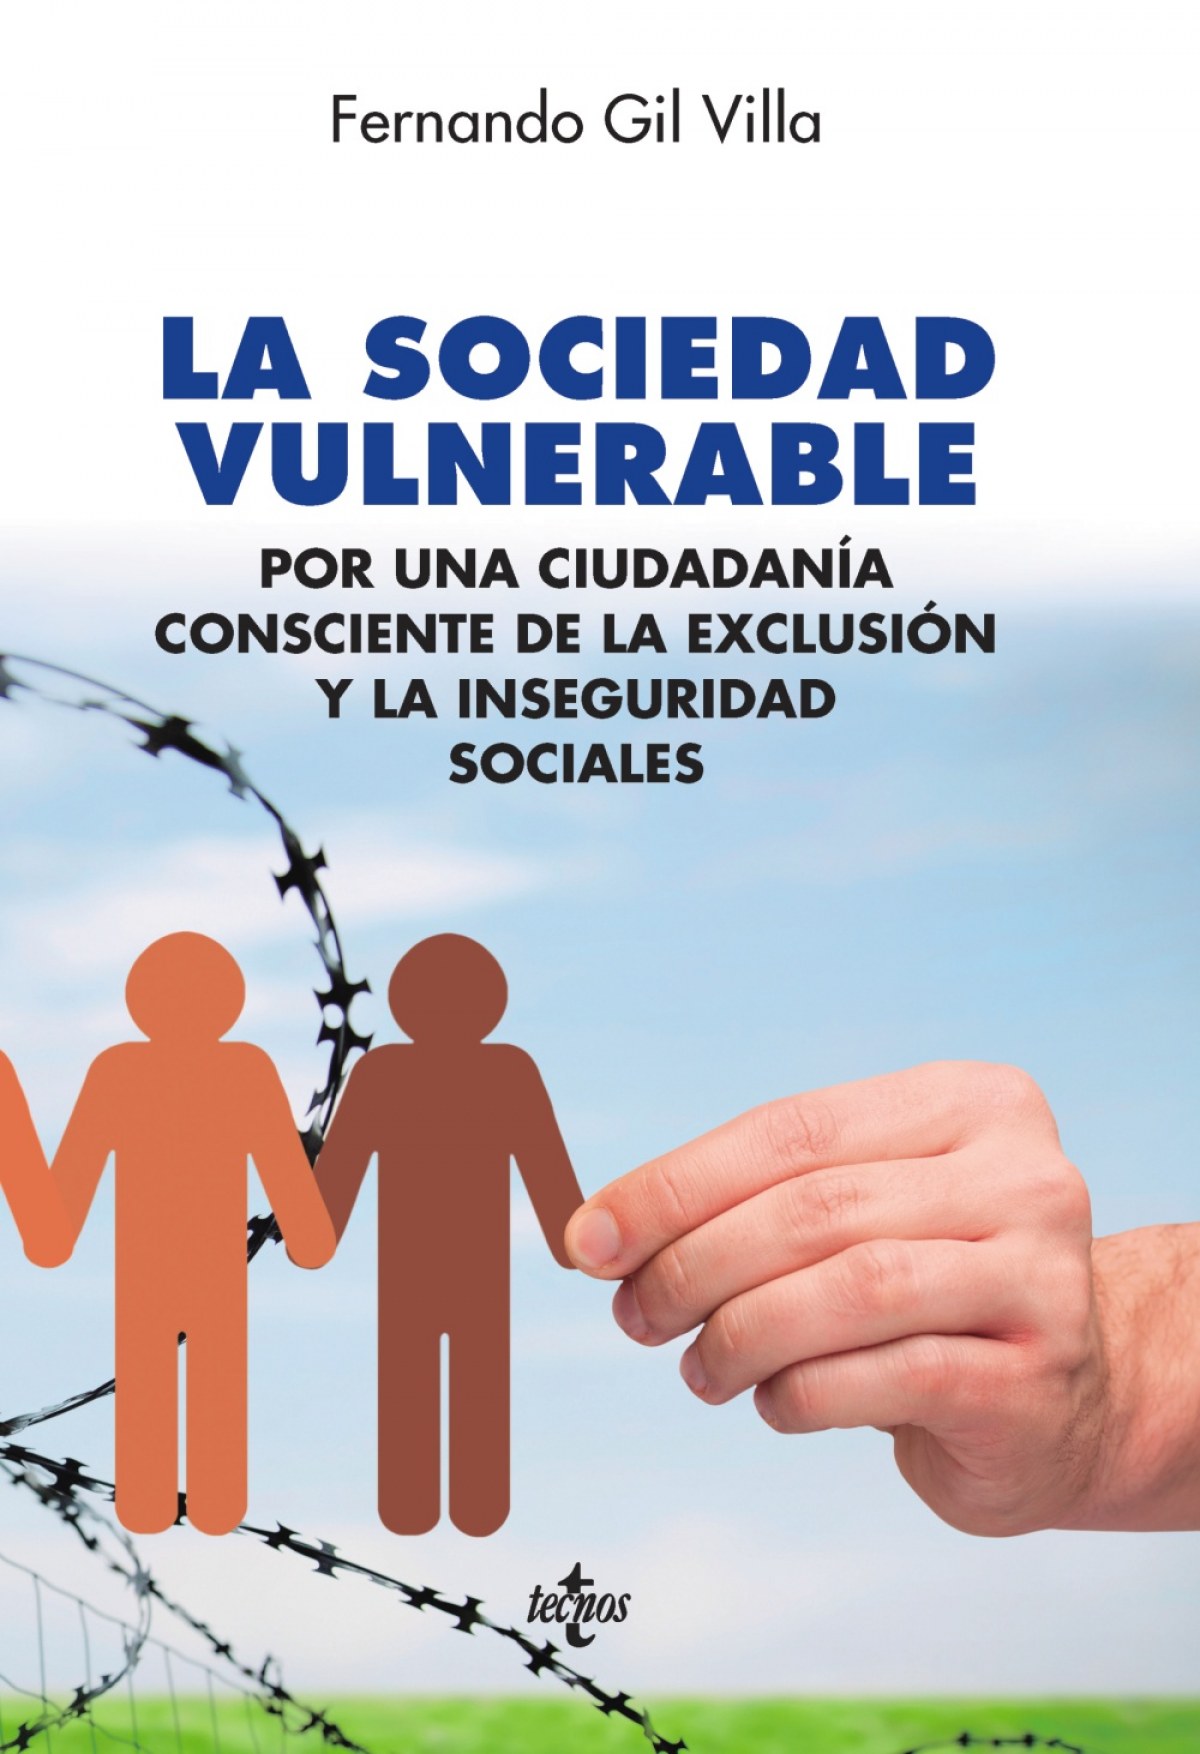 La sociedad vulnerable - Gil Villa, Fernando